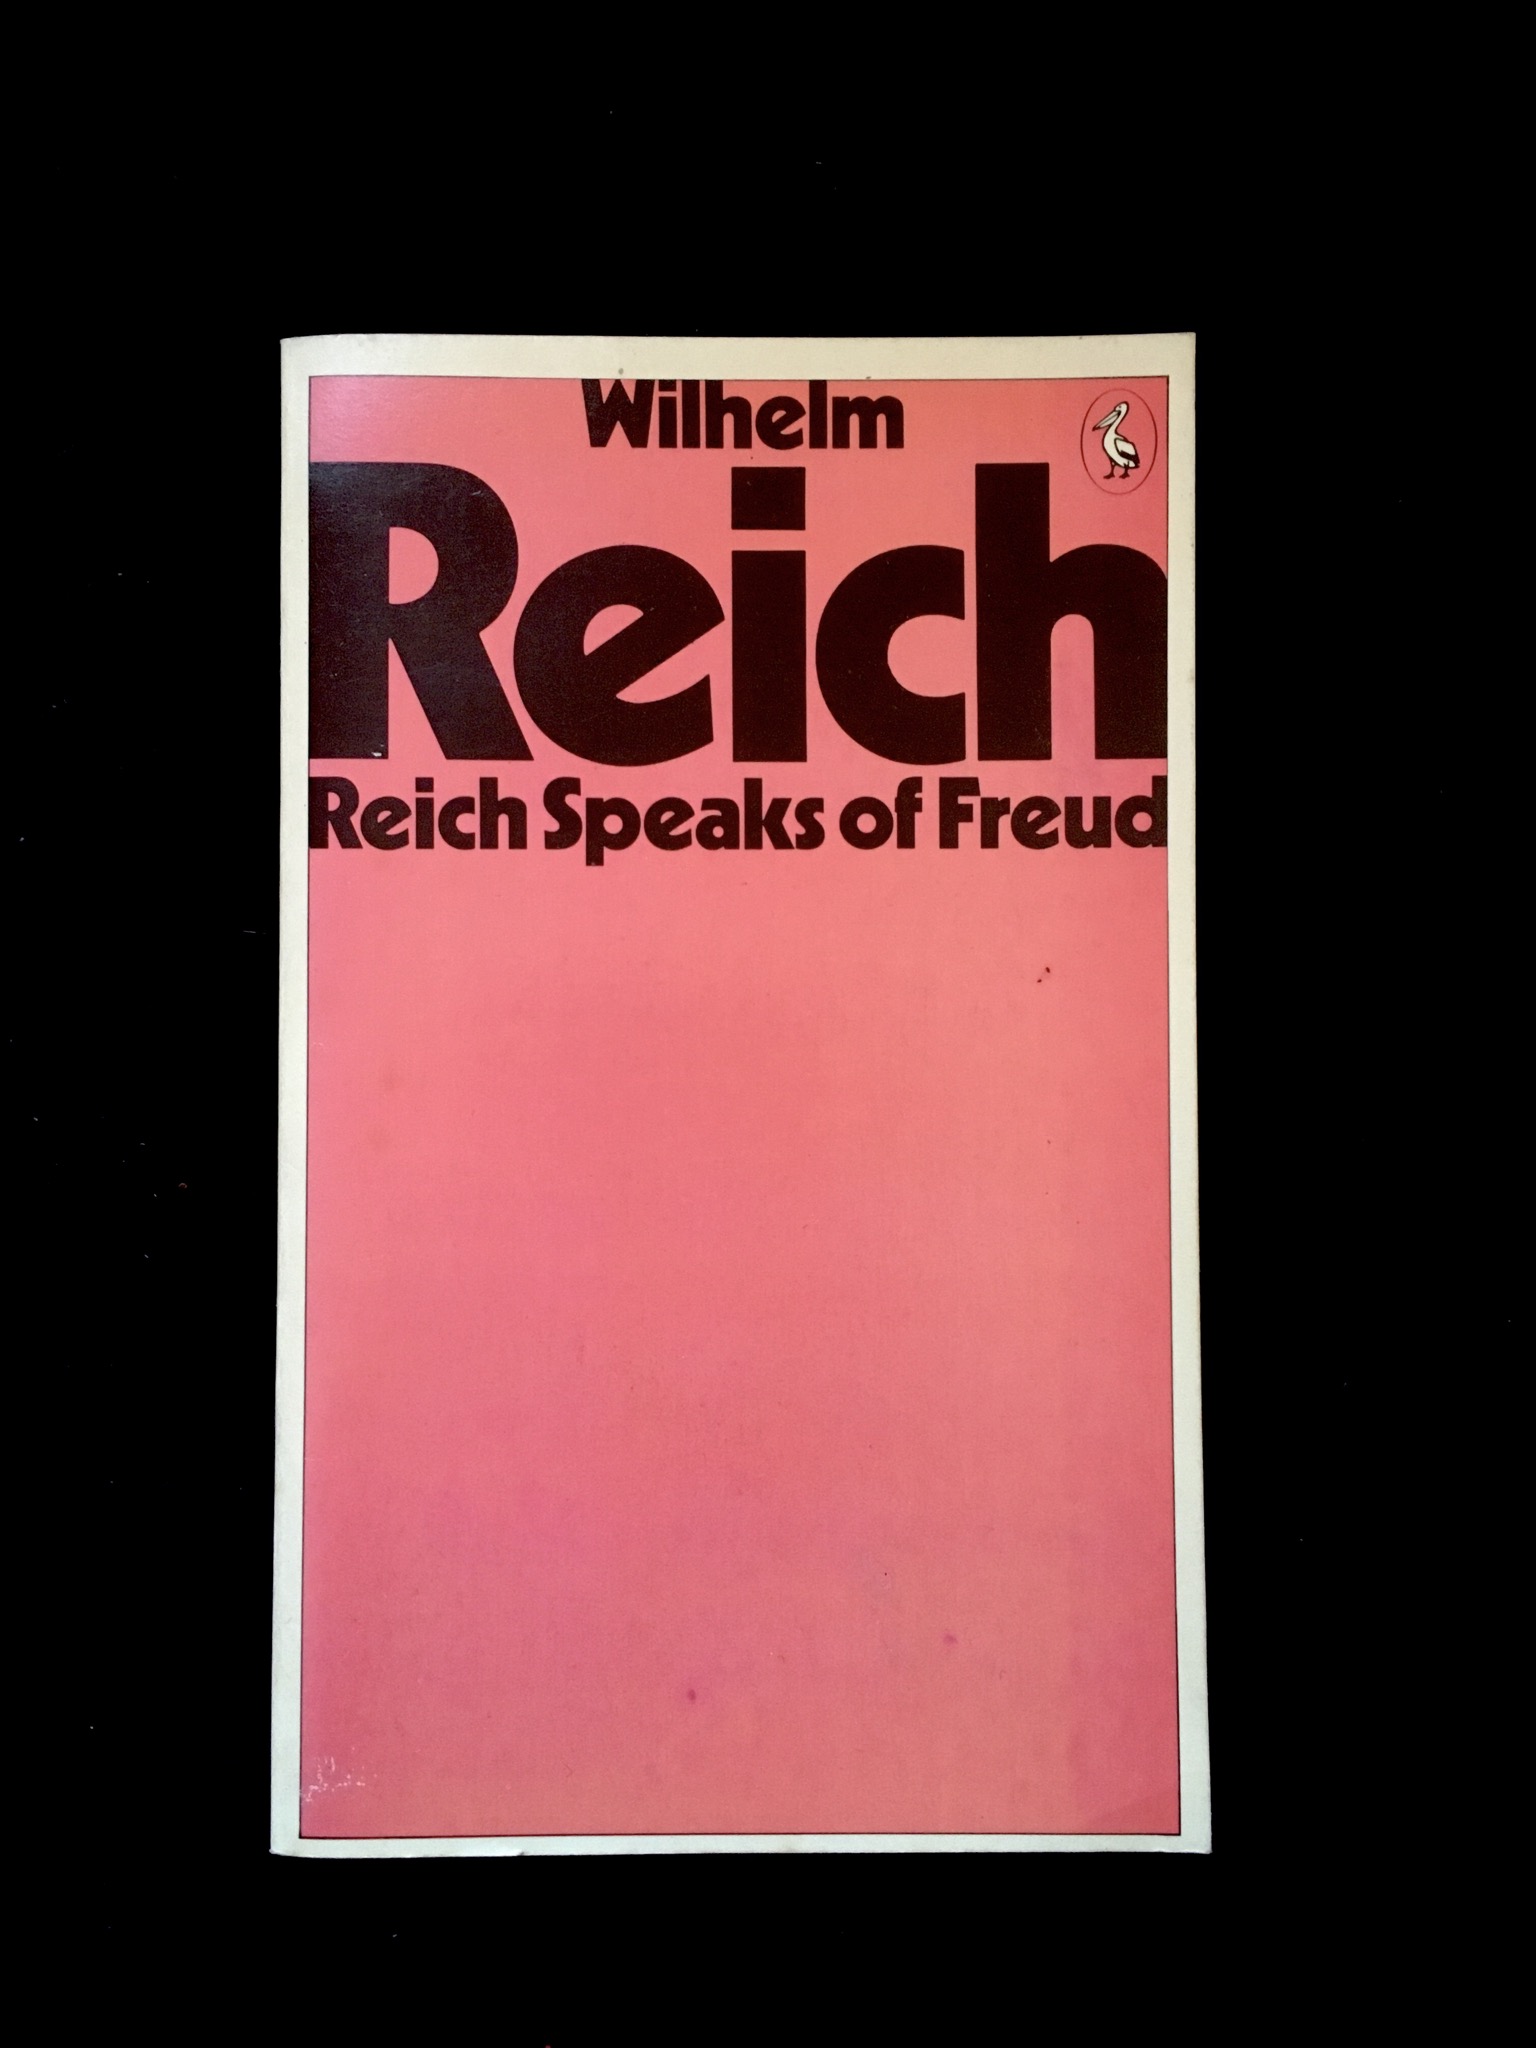 Wilhelm Reich: Reich Speaks of Freud